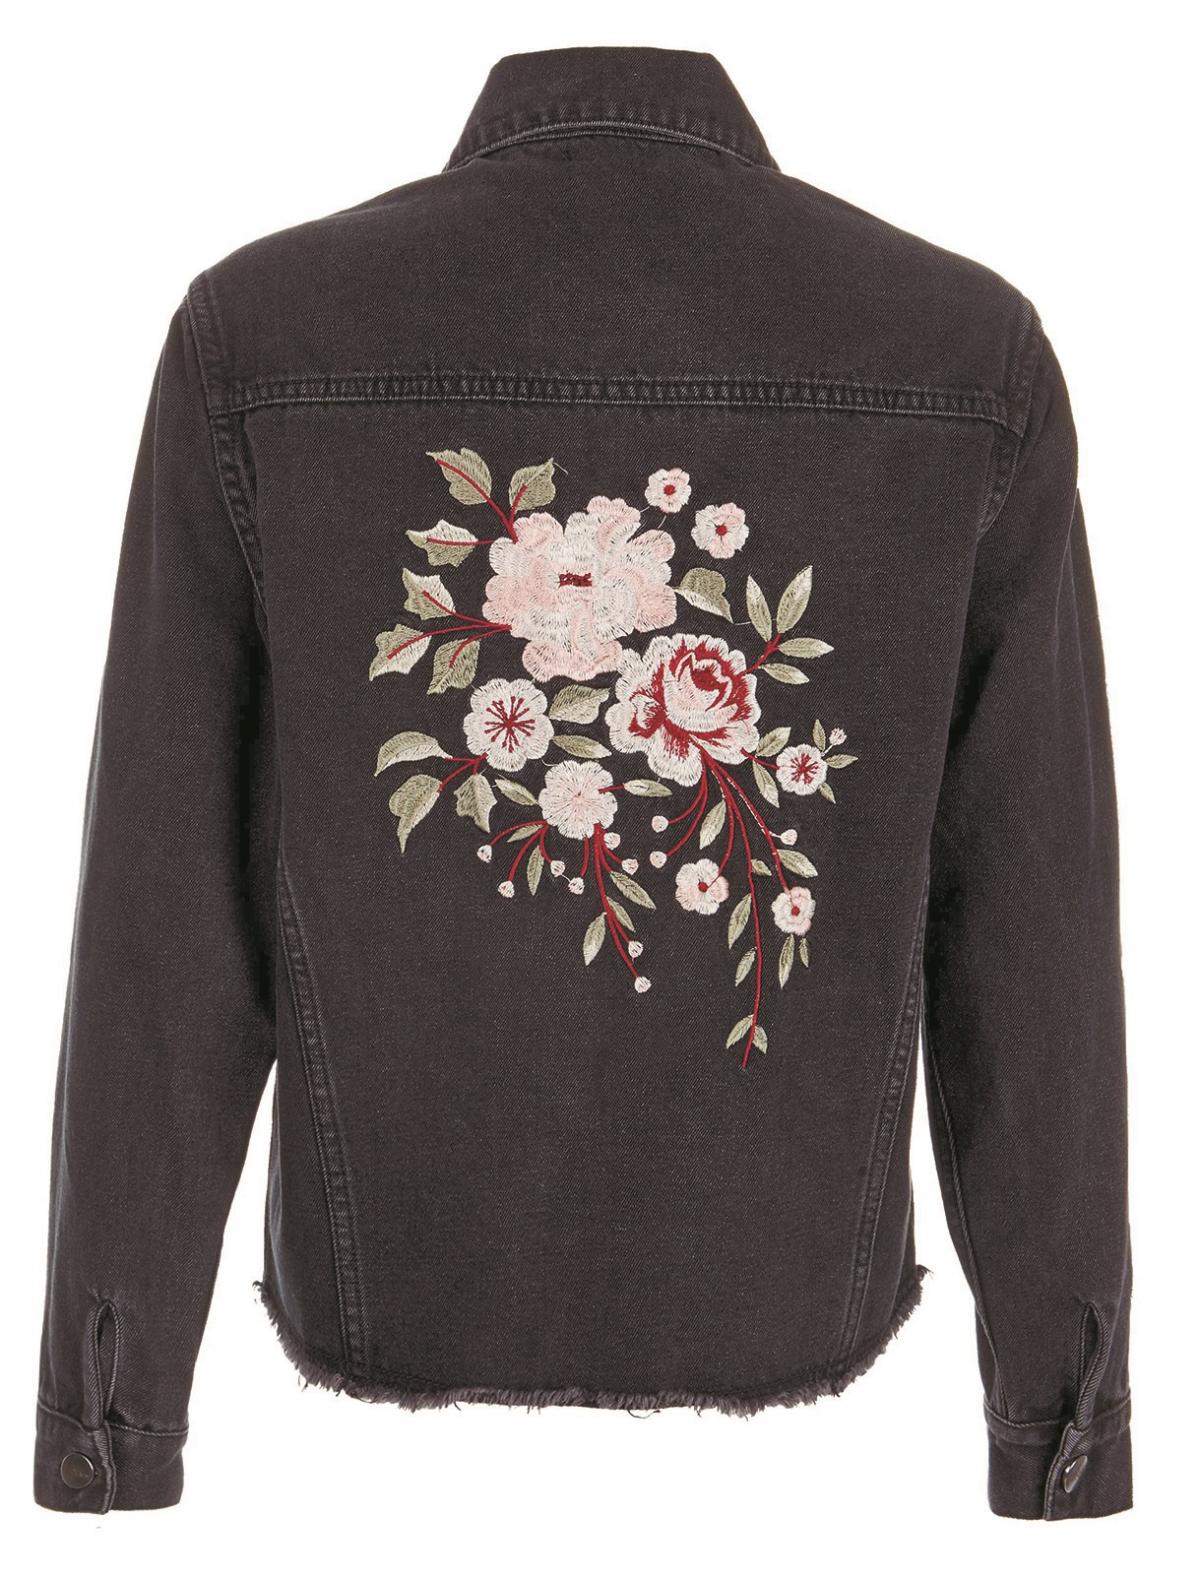 New Look, Washed Black Floral Embroidered Denim Jacket, £24,99